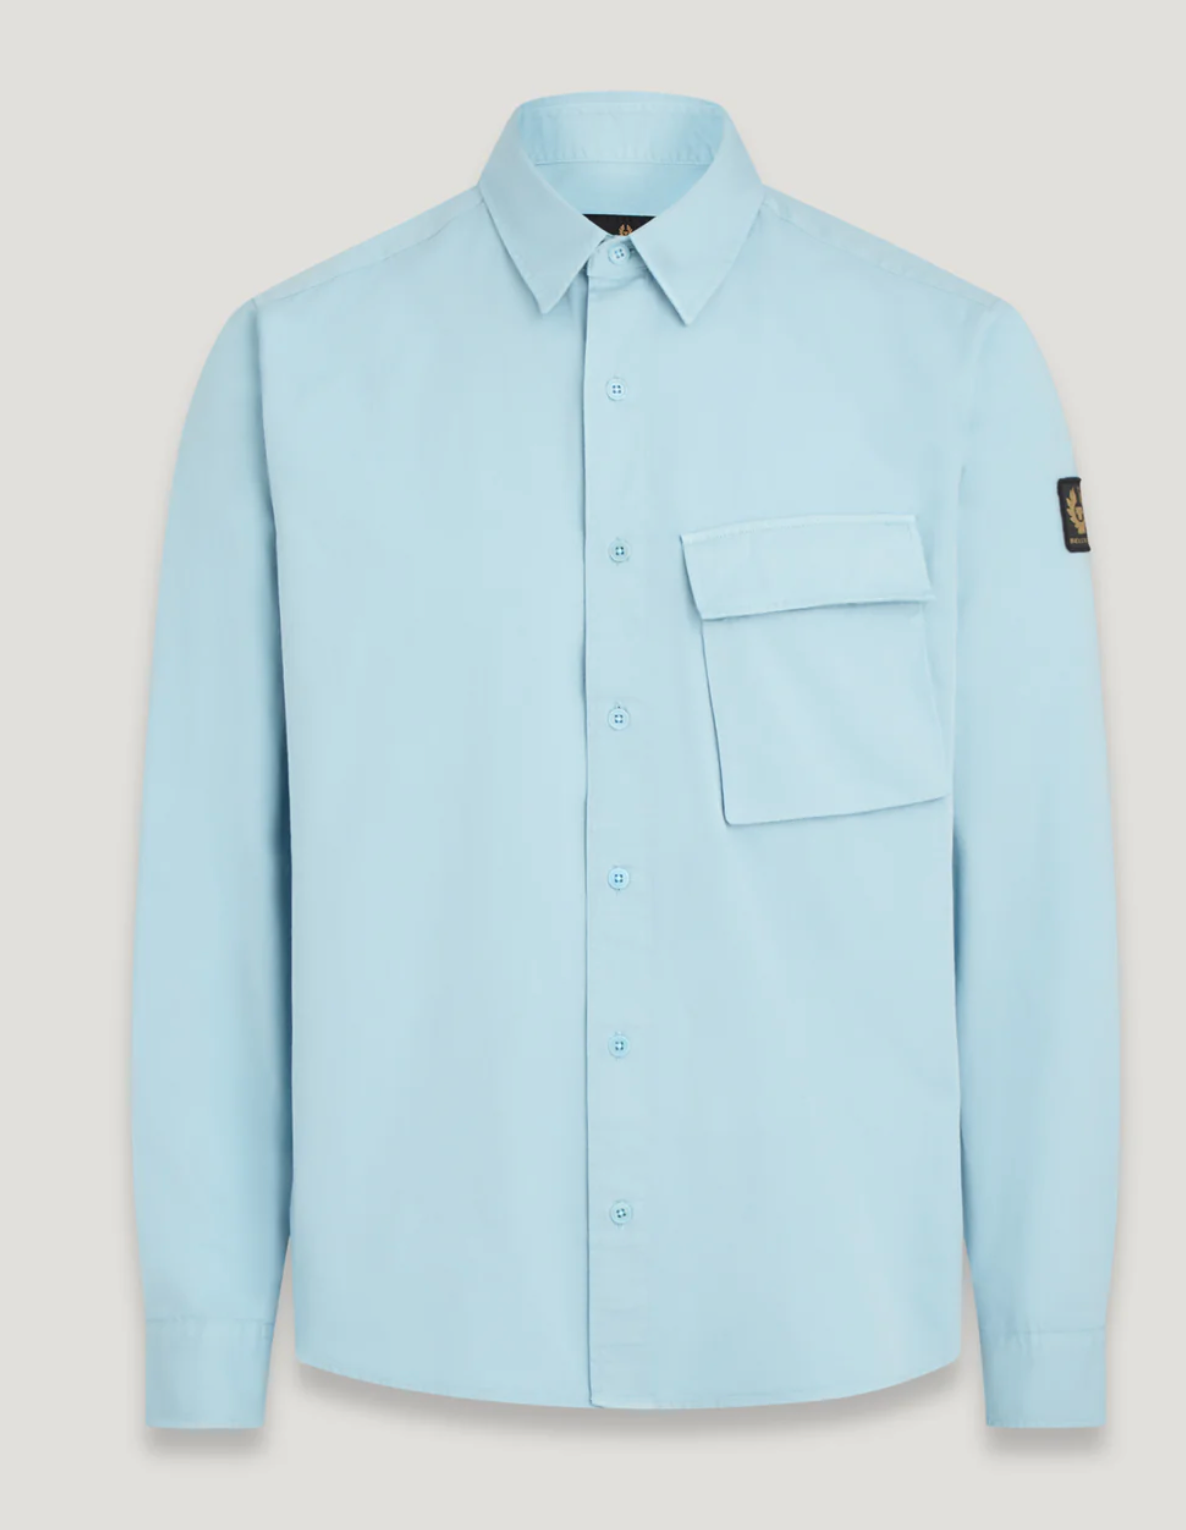 Belstaff "Scale" Long Sleeve Shirt Skyline Blue